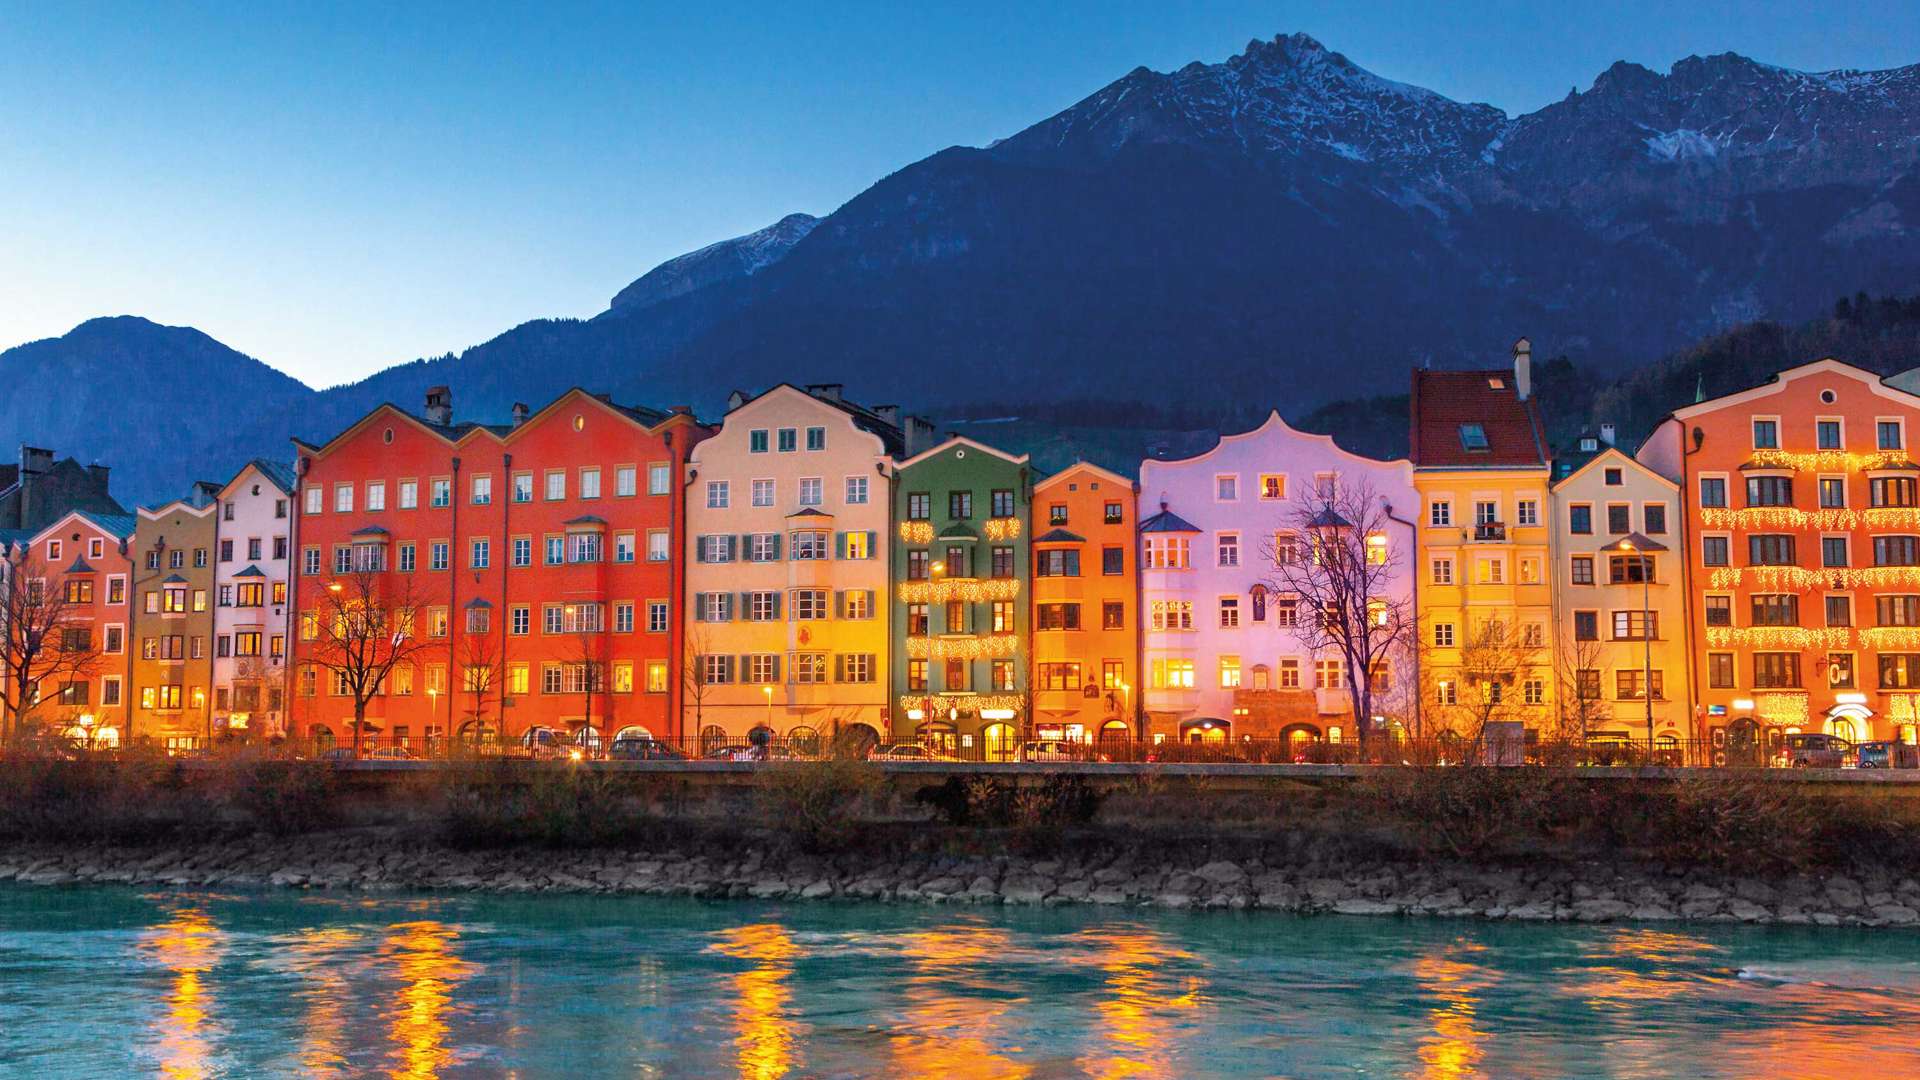 Innsbruck at Night, Austria